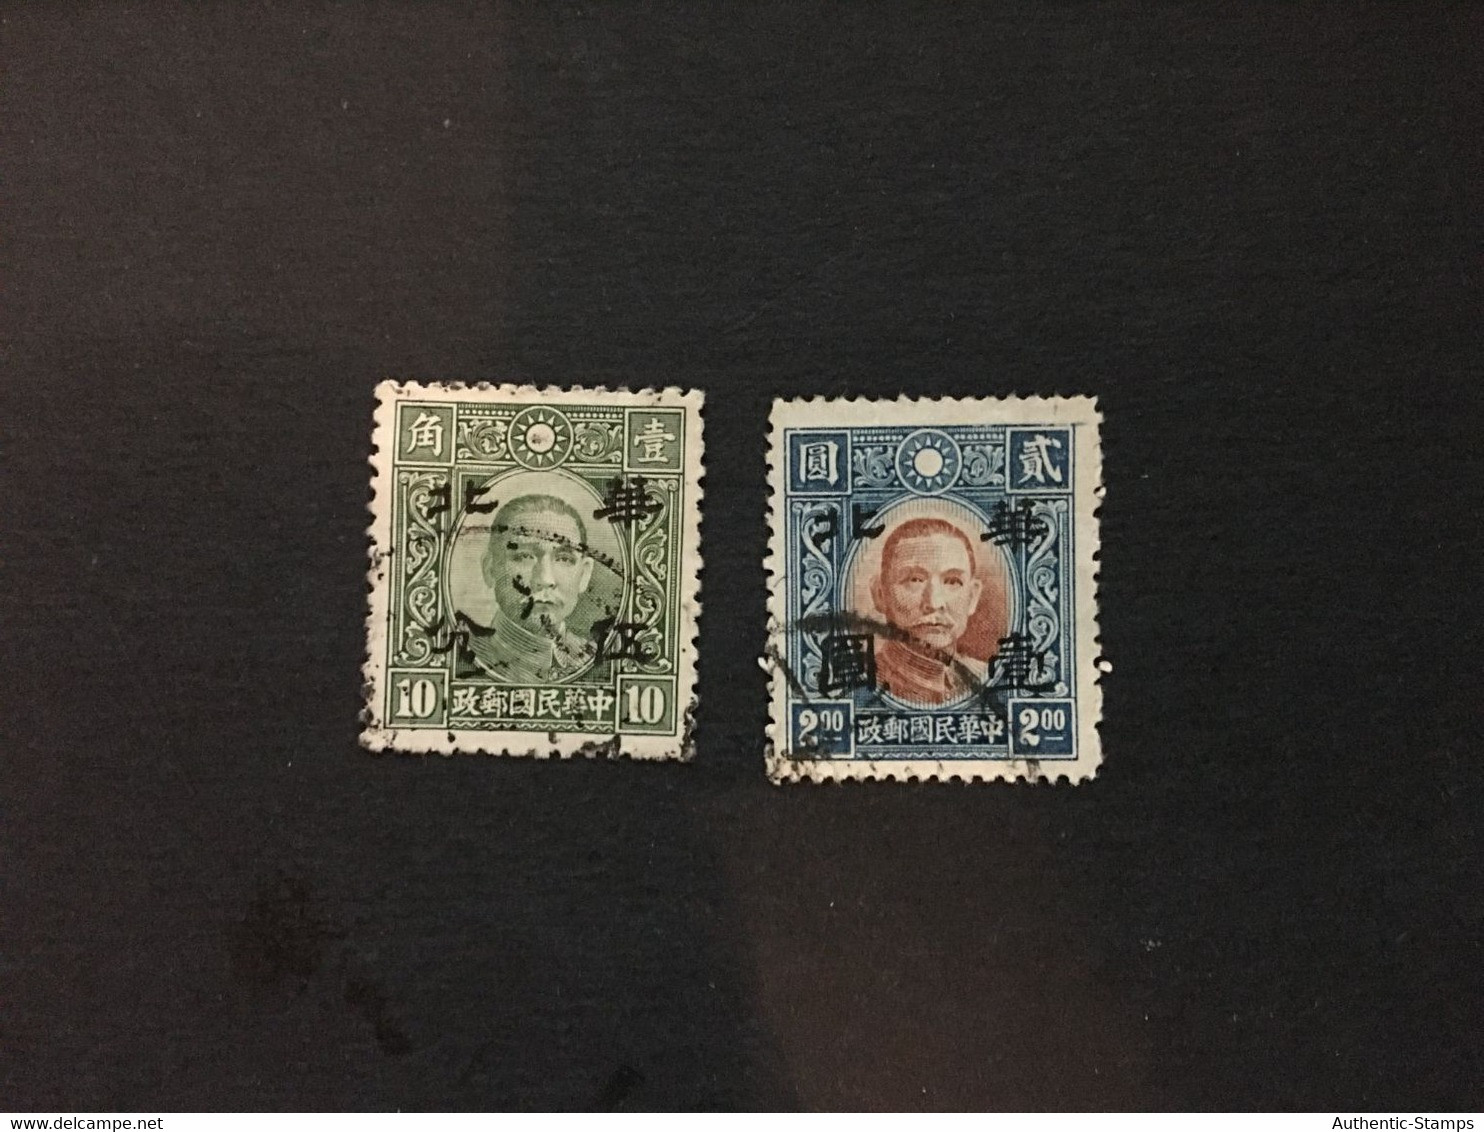 China Stamp, Used, CINA,CHINE,LIST1666 - 1941-45 Northern China